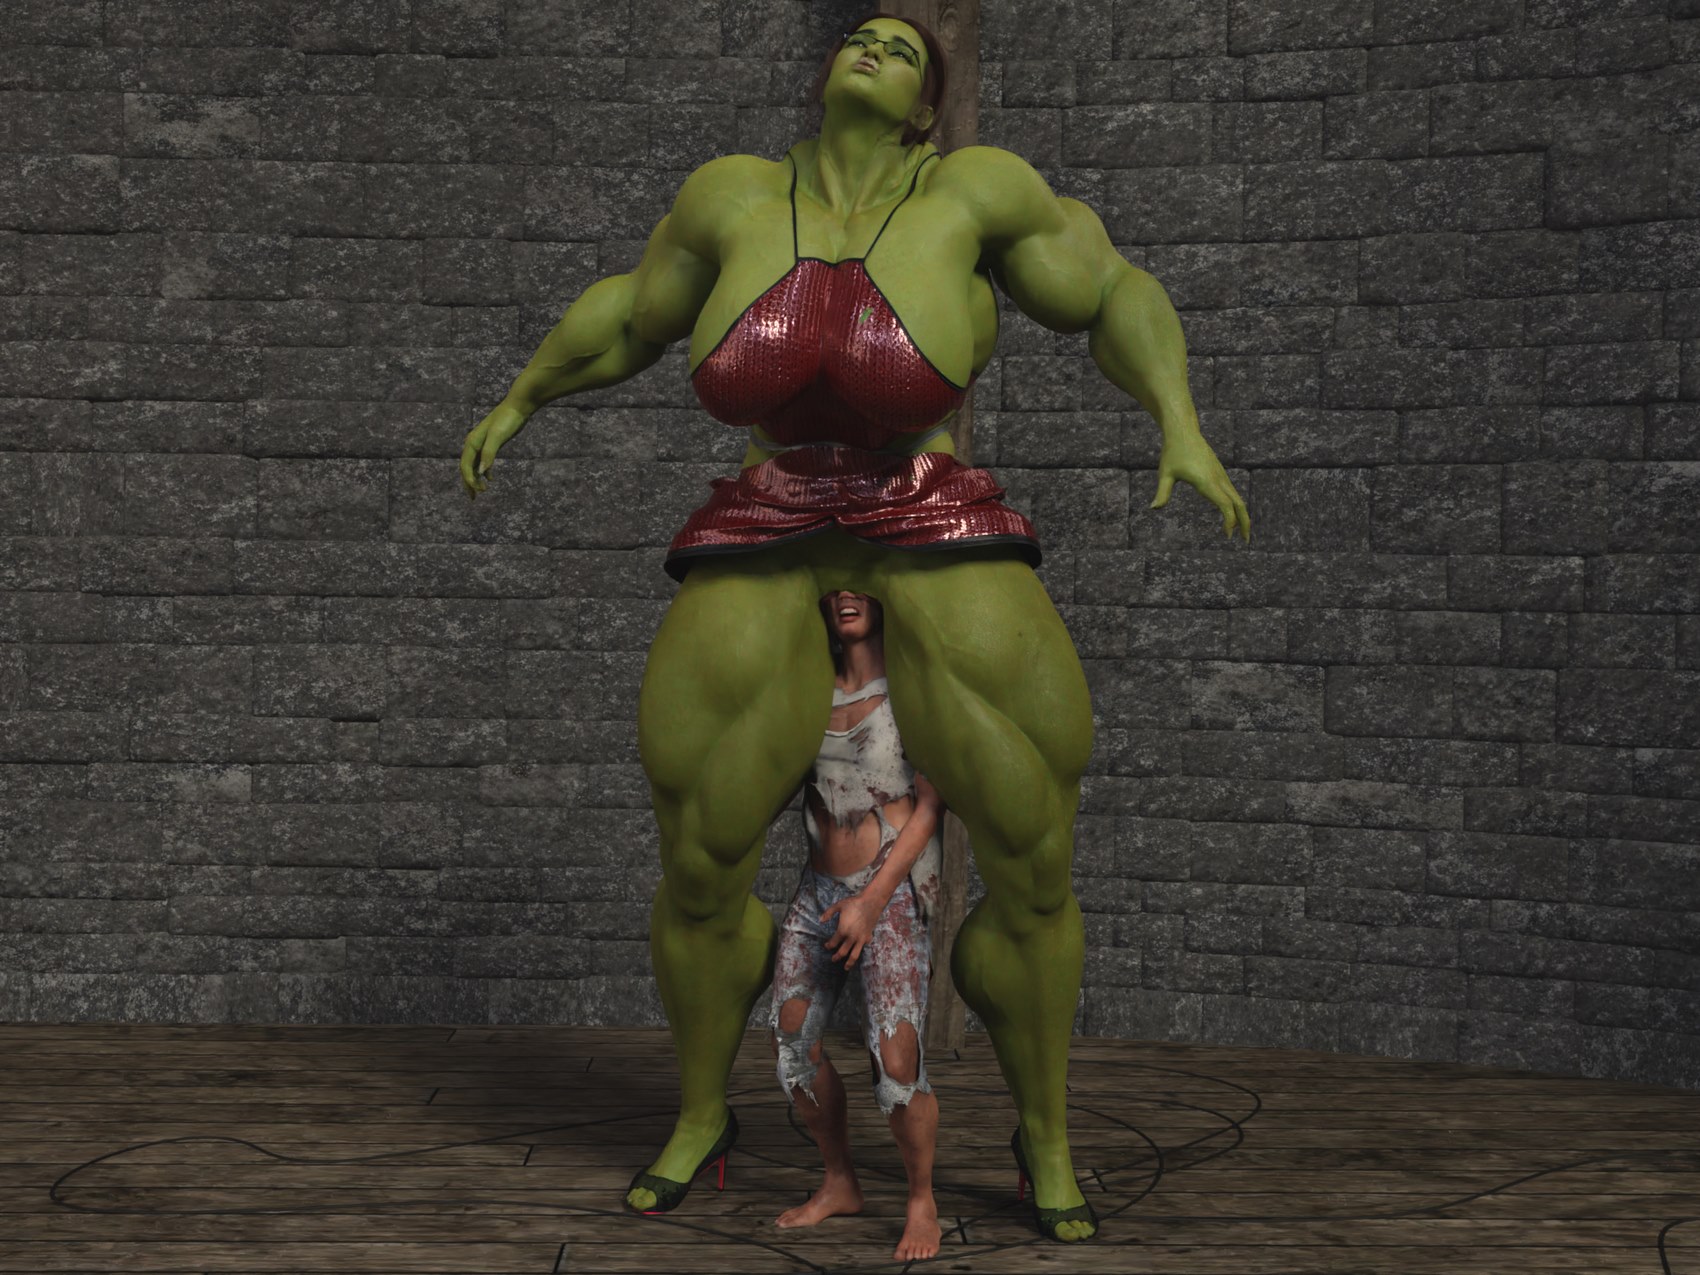 1700px x 1275px - Hulk Woman vs Hulk Man [Mhmdt] â€¢ Free Porn Comics